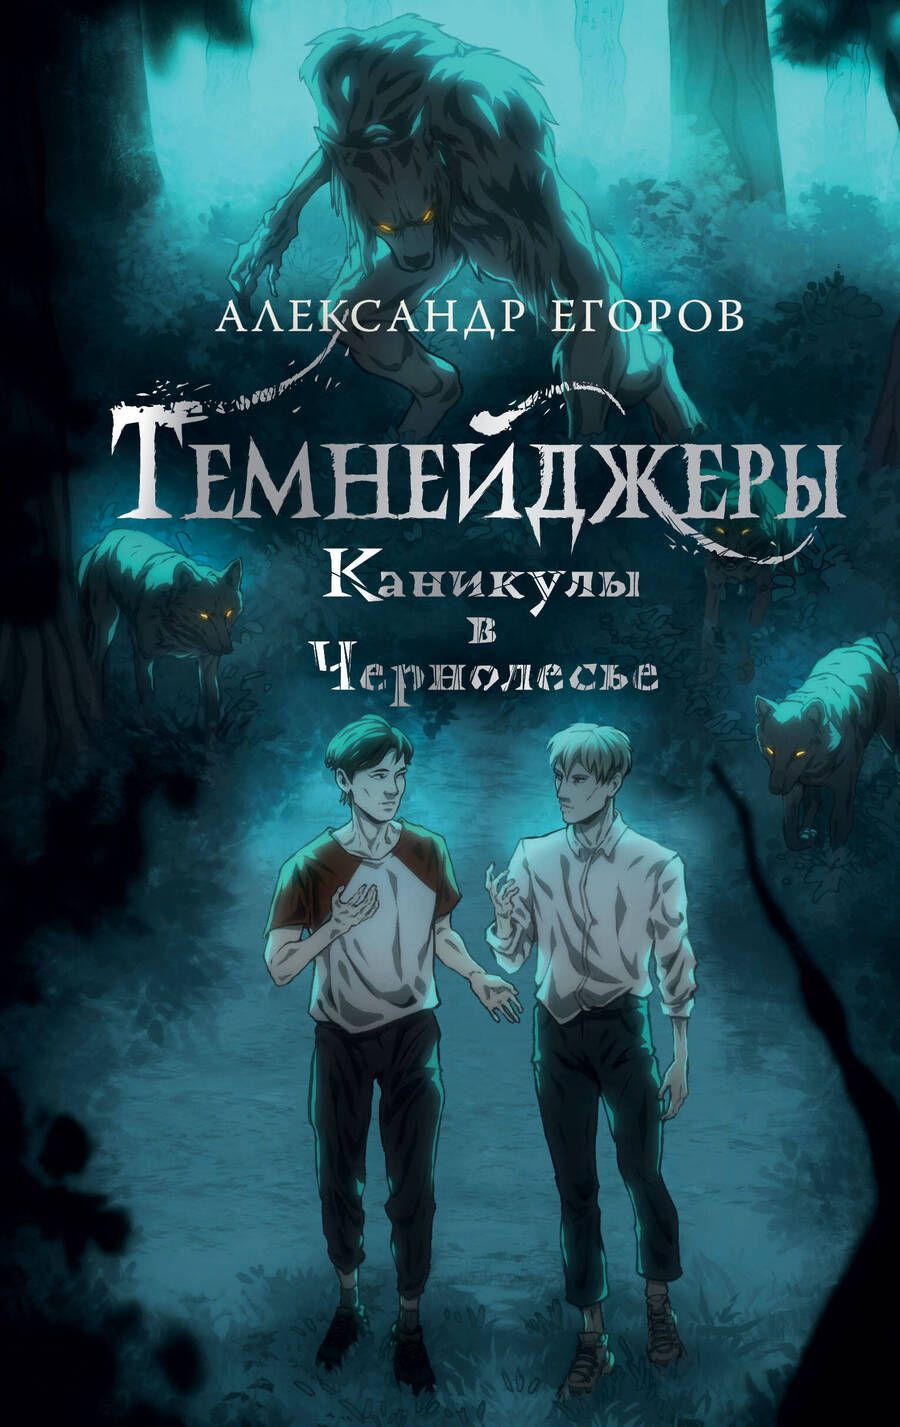 Обложка книги "Егоров: Темнейджеры. Каникулы в Чернолесье"